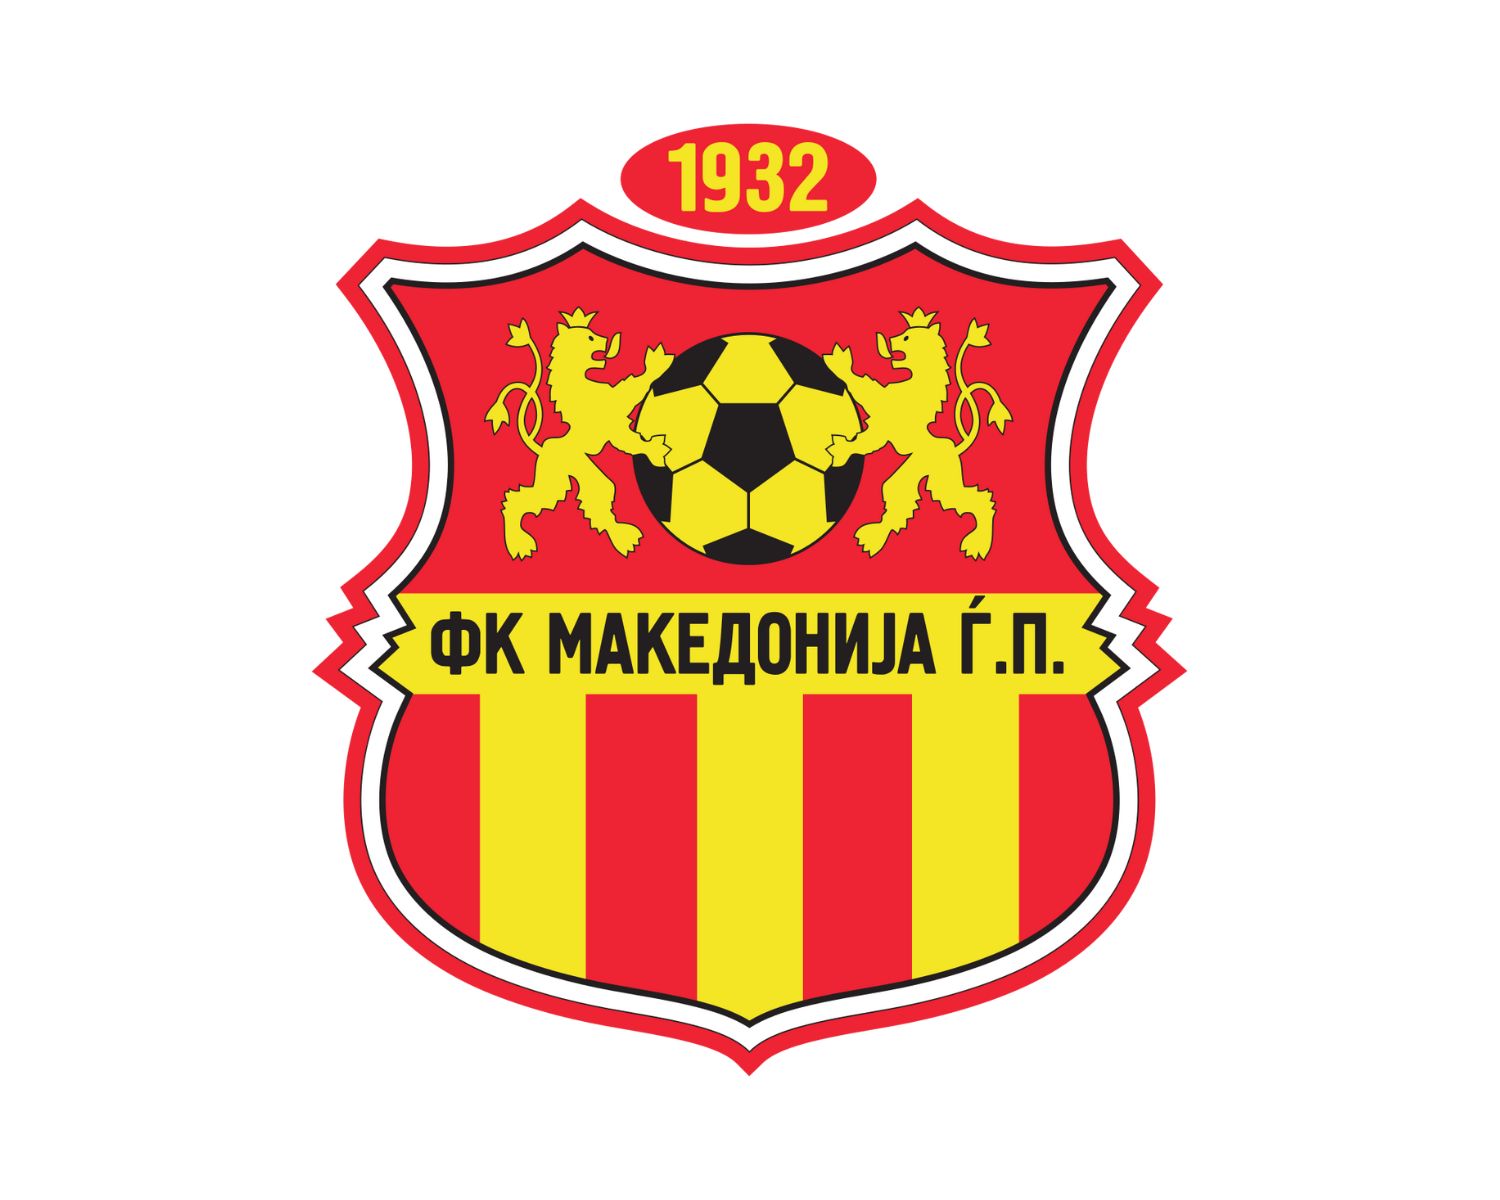 fk-makedonija-gjorce-petrov-12-football-club-facts